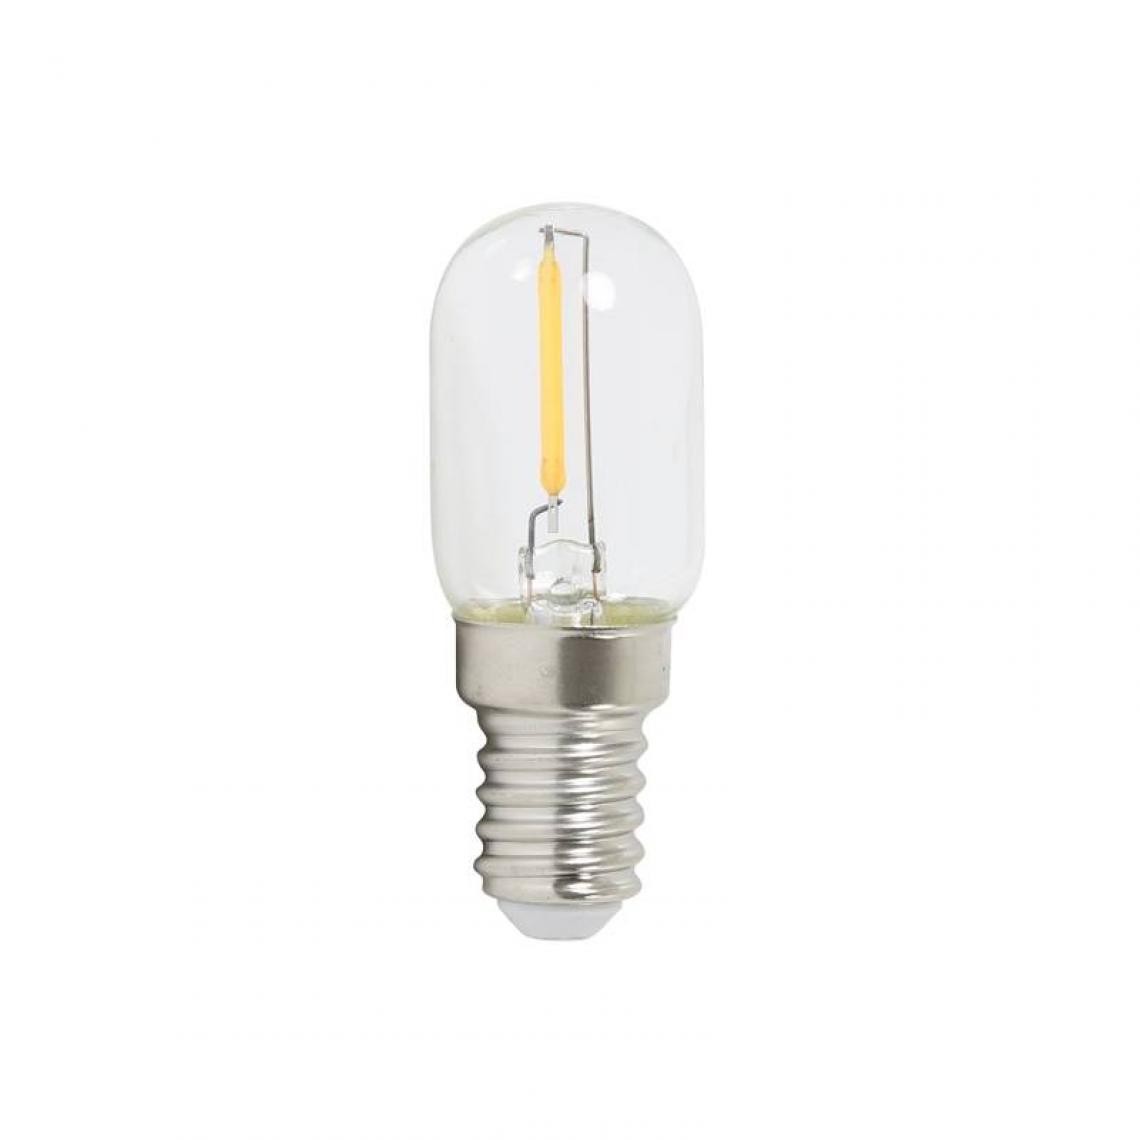 L'Héritier Du Temps - Ampoule Bougie à LED E14 Puissance 1W Intensité Variable Lumière Claire 2x2x6cm - Ampoules LED